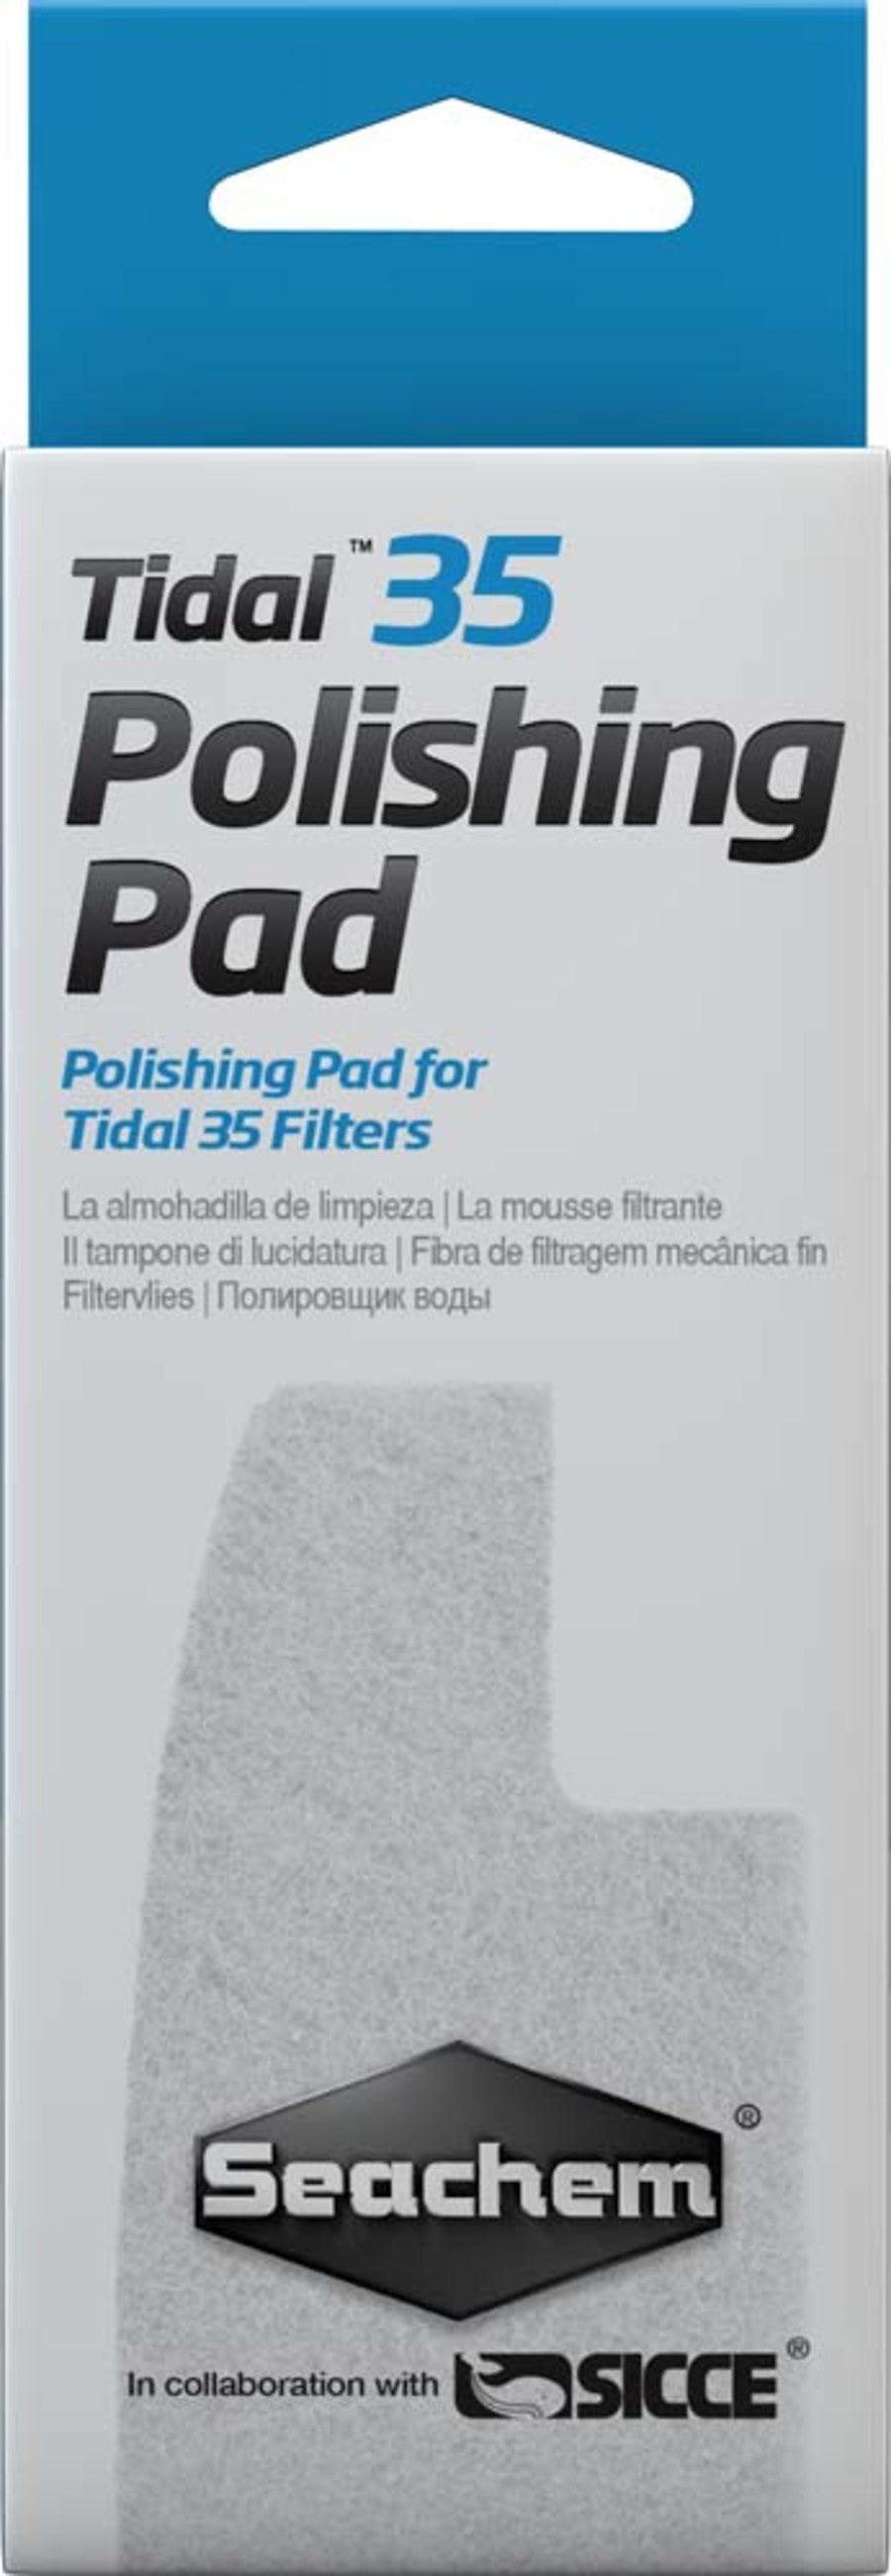 Seachem Tidal Polishing Pad